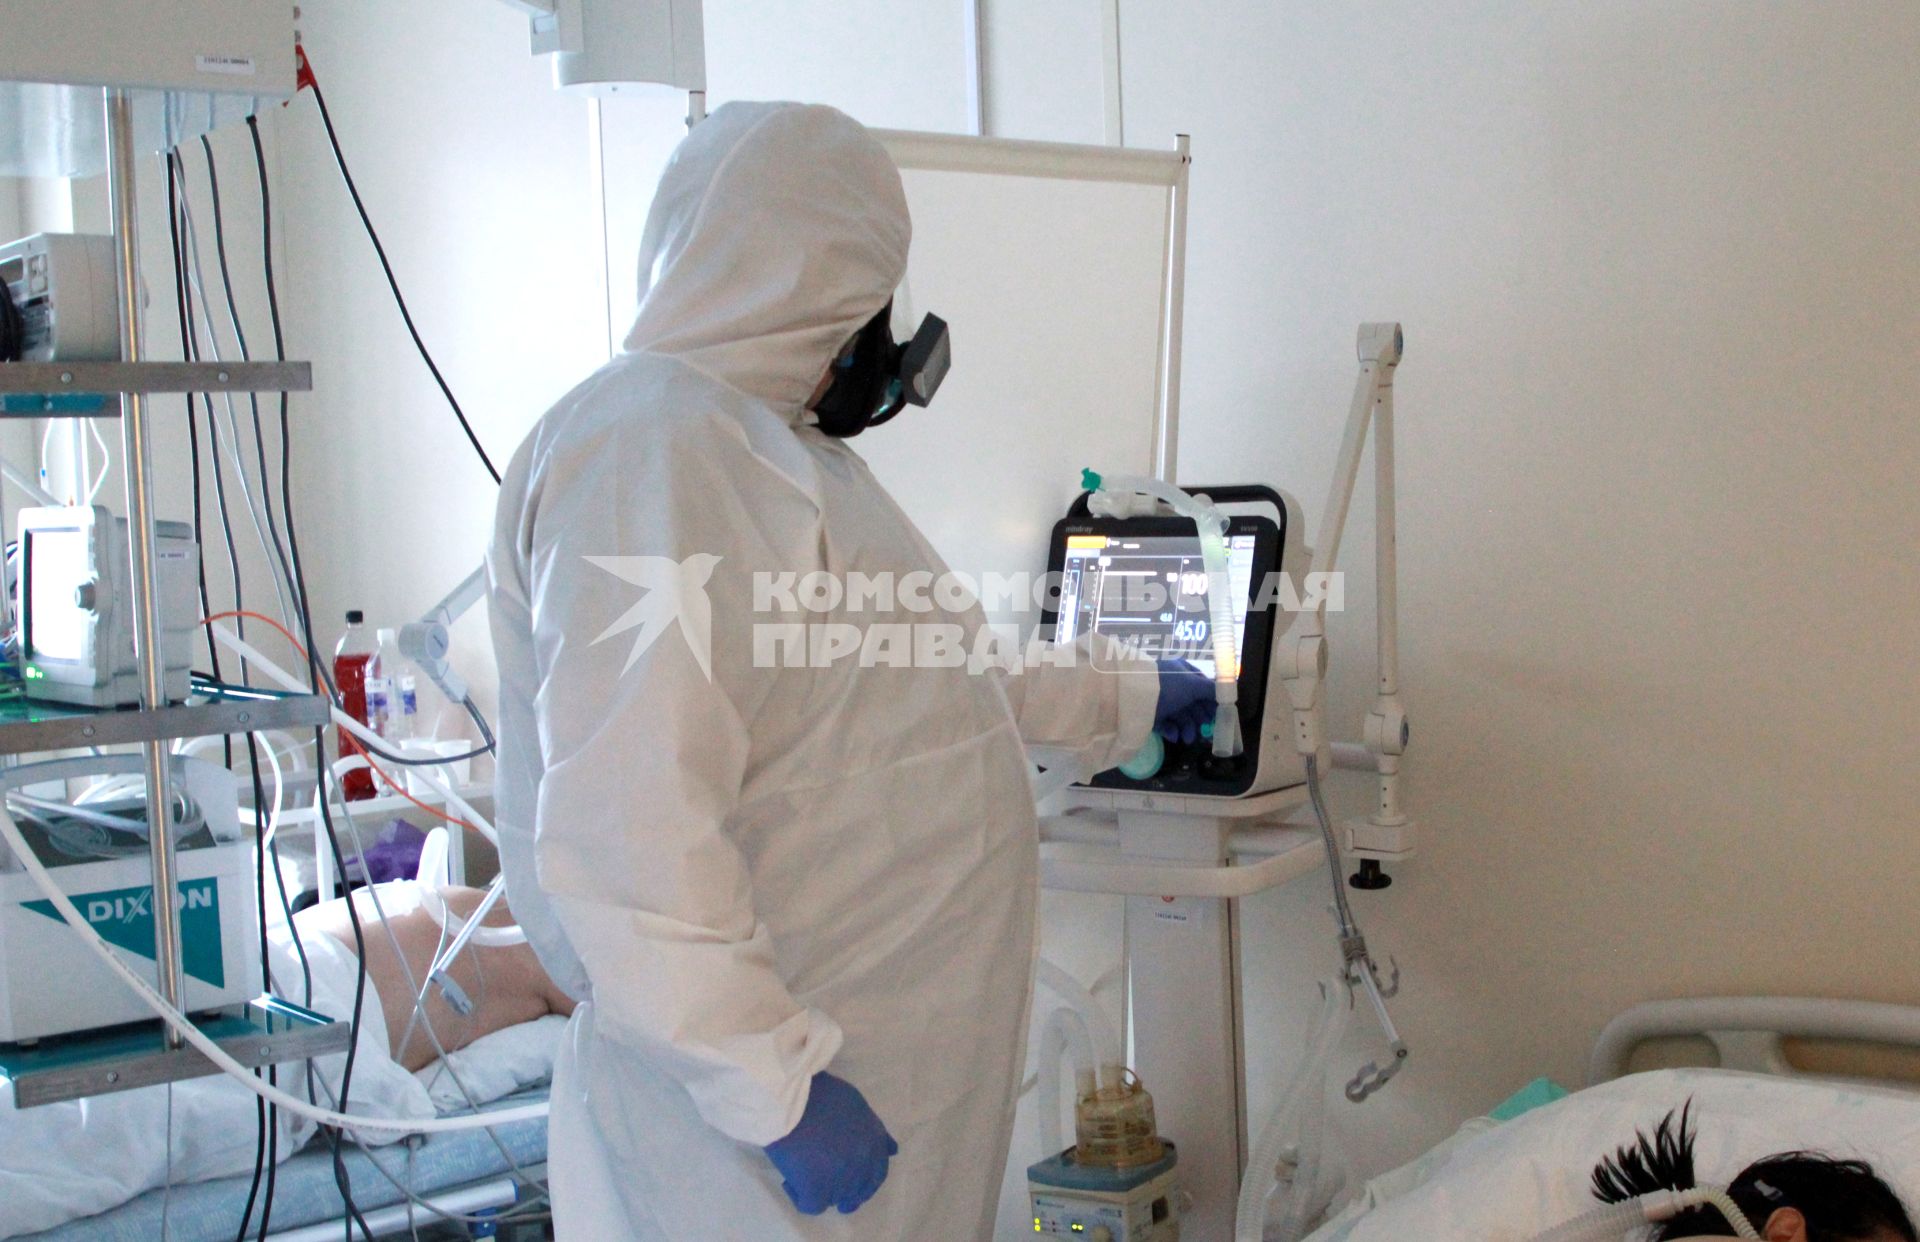 Иркутск. Медицинский работник в больнице, где оказывают помощь пациентам с коронавирусной инфекцией COVID-19.